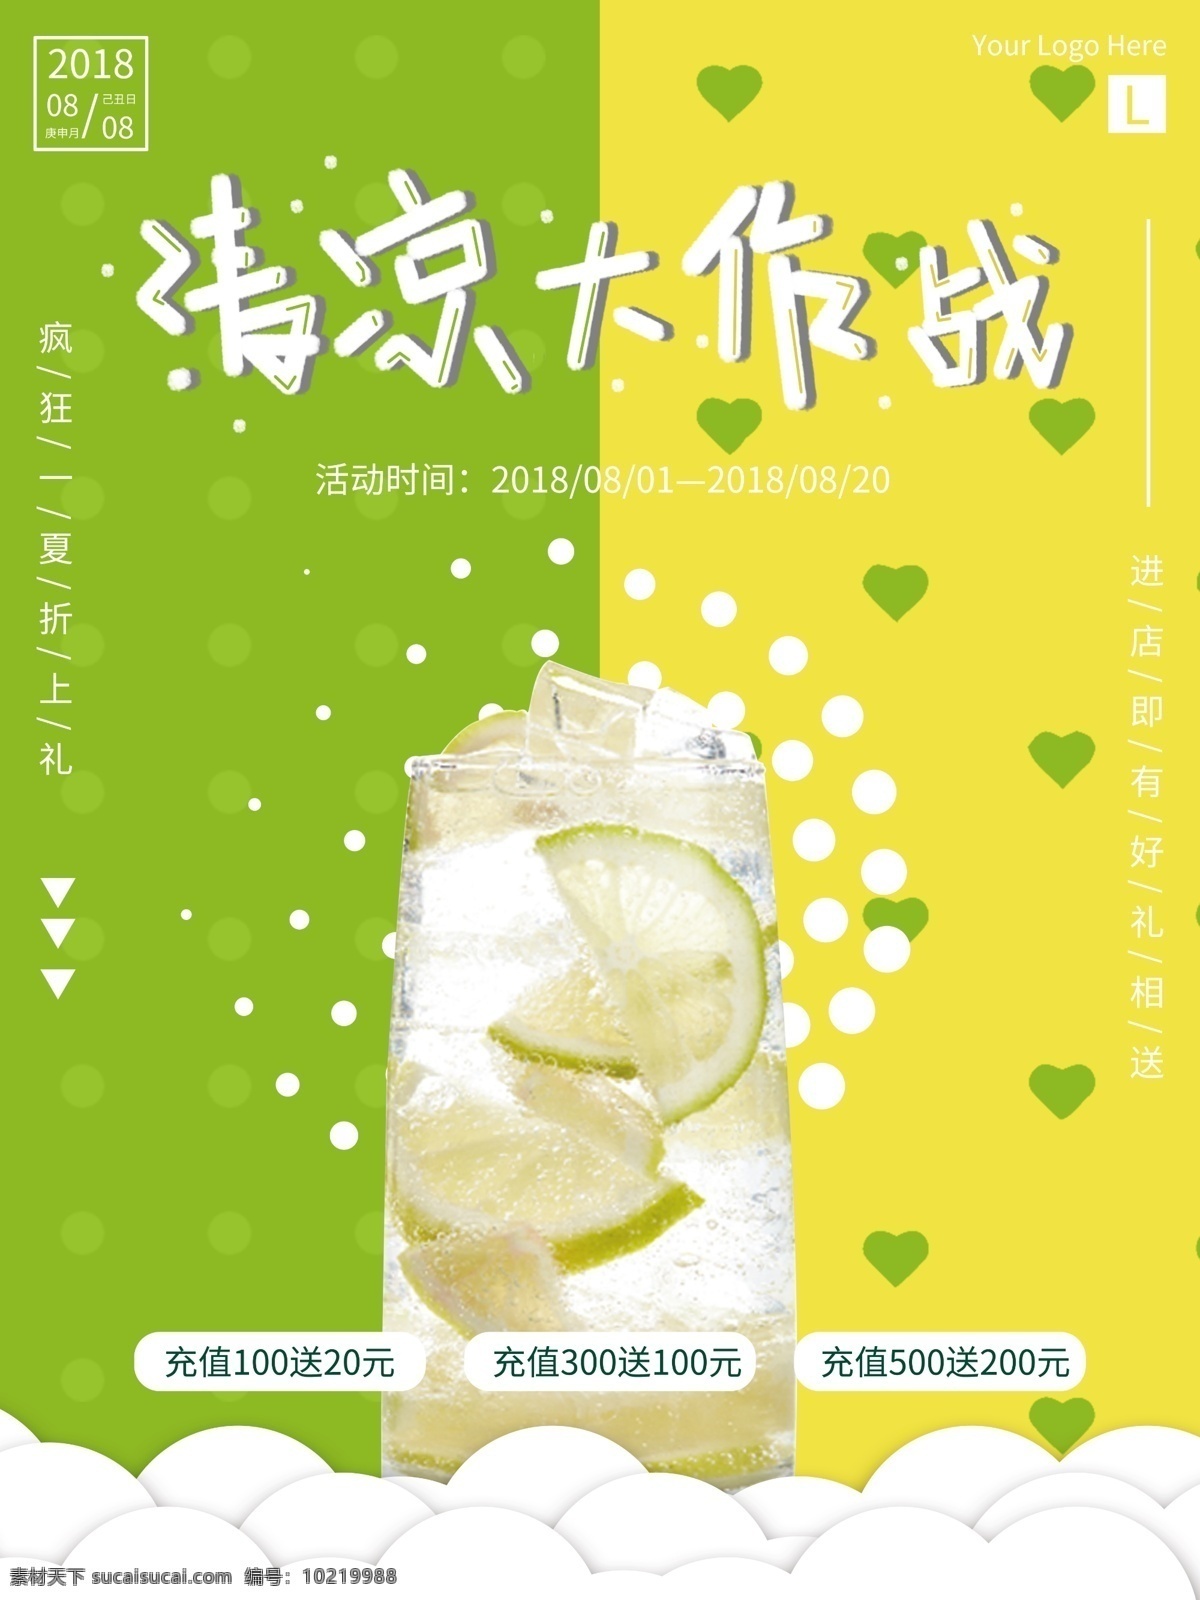 手写 字体 清凉 大作 战 甜品 冷饮 促销 海报 黄色 绿色 饮料 果汁 夏天 柠檬 水果 饮品